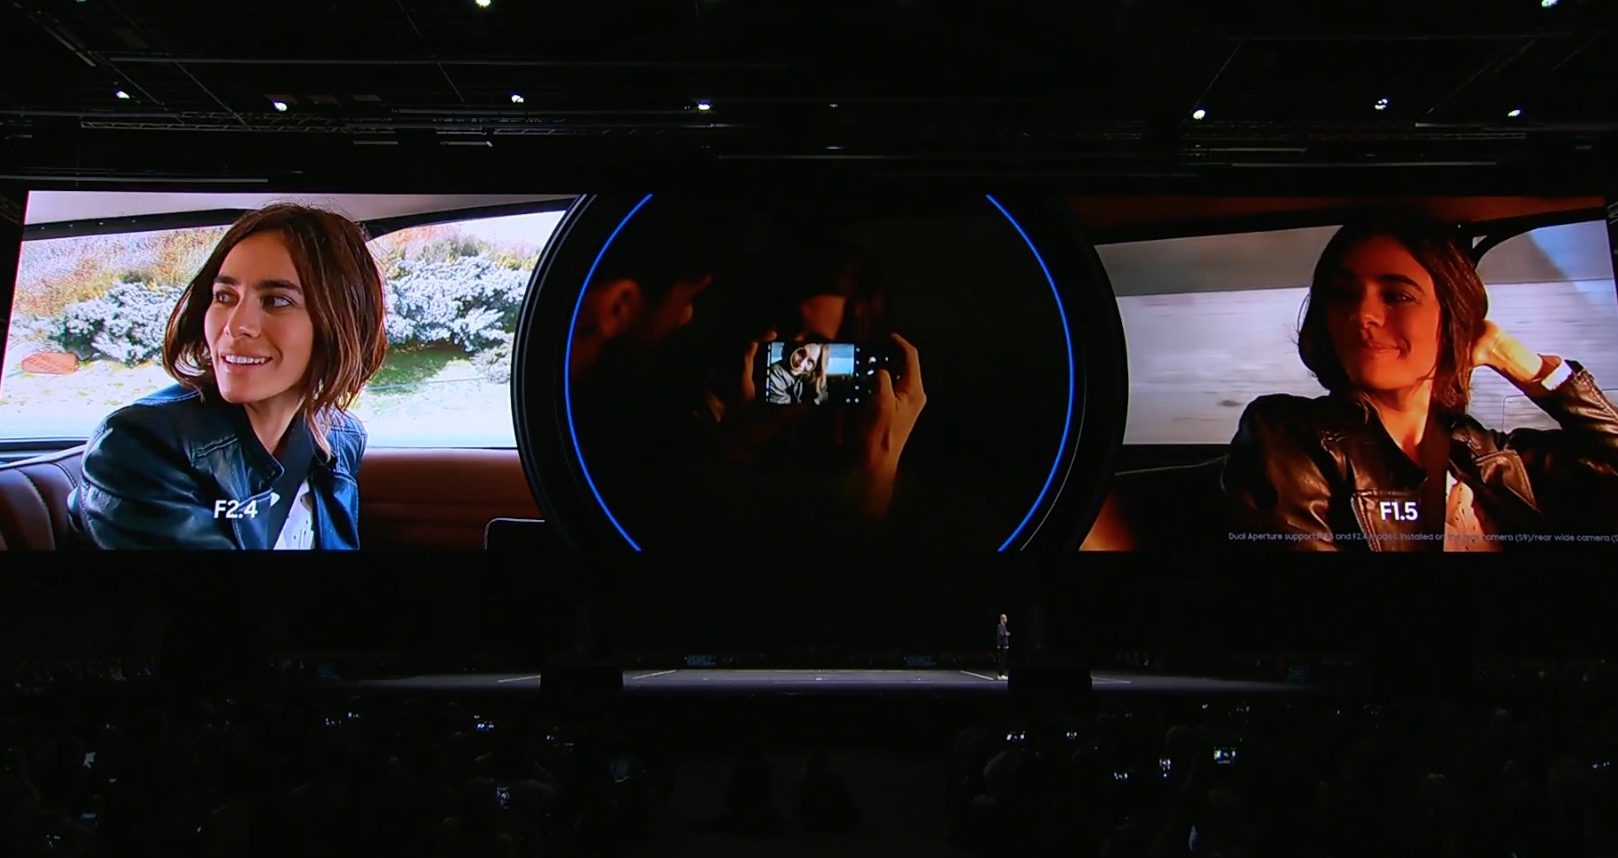 Samsung chính thức giới
thiệu Galaxy S9/ S9+: Tập trung vào camera và AI, giá từ
16.3 triệu